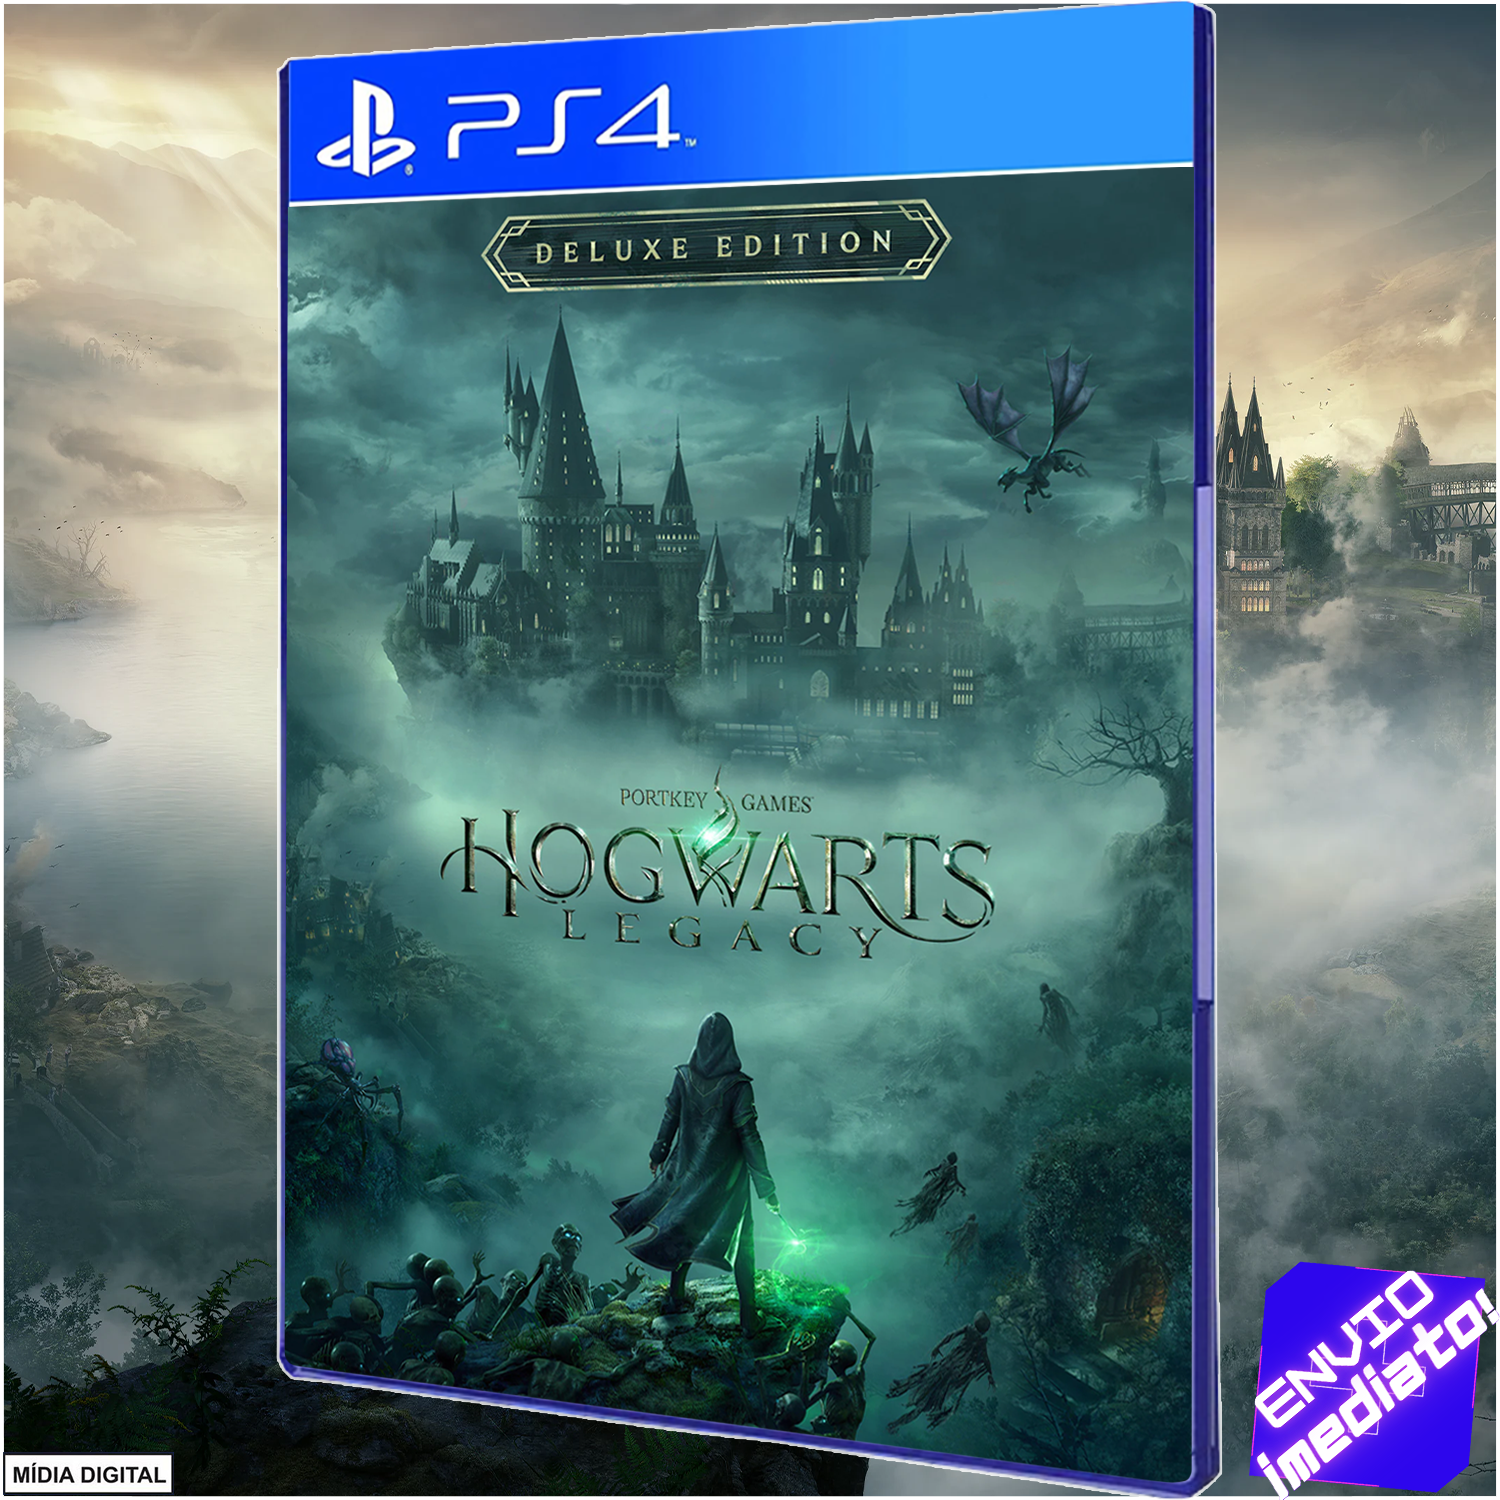 Hogwarts Legacy  Baixe e compre hoje - Epic Games Store